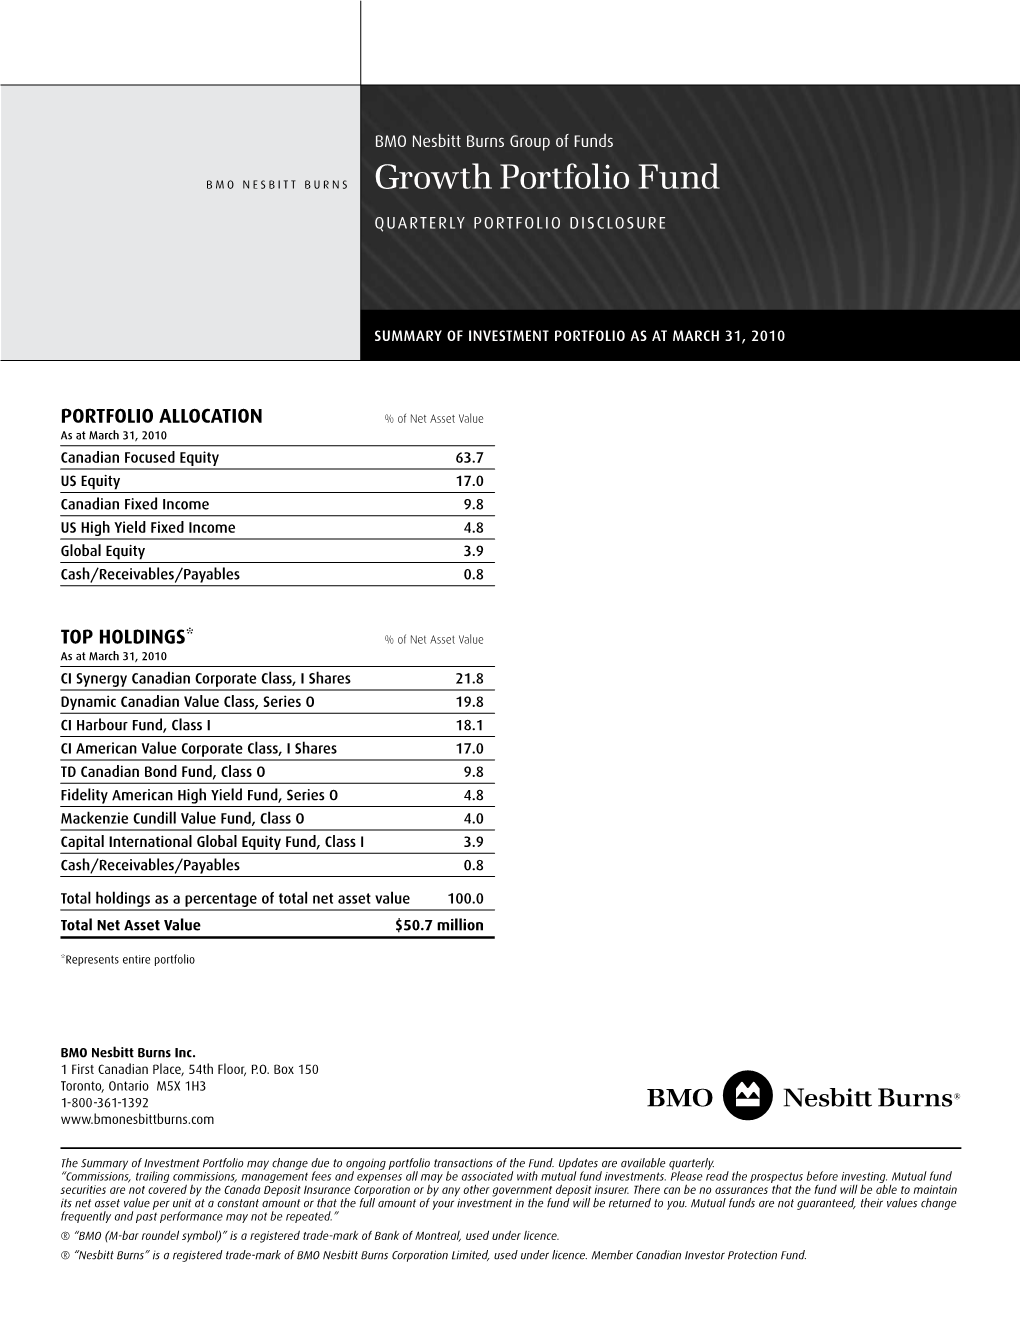 Growth Portfolio Fund